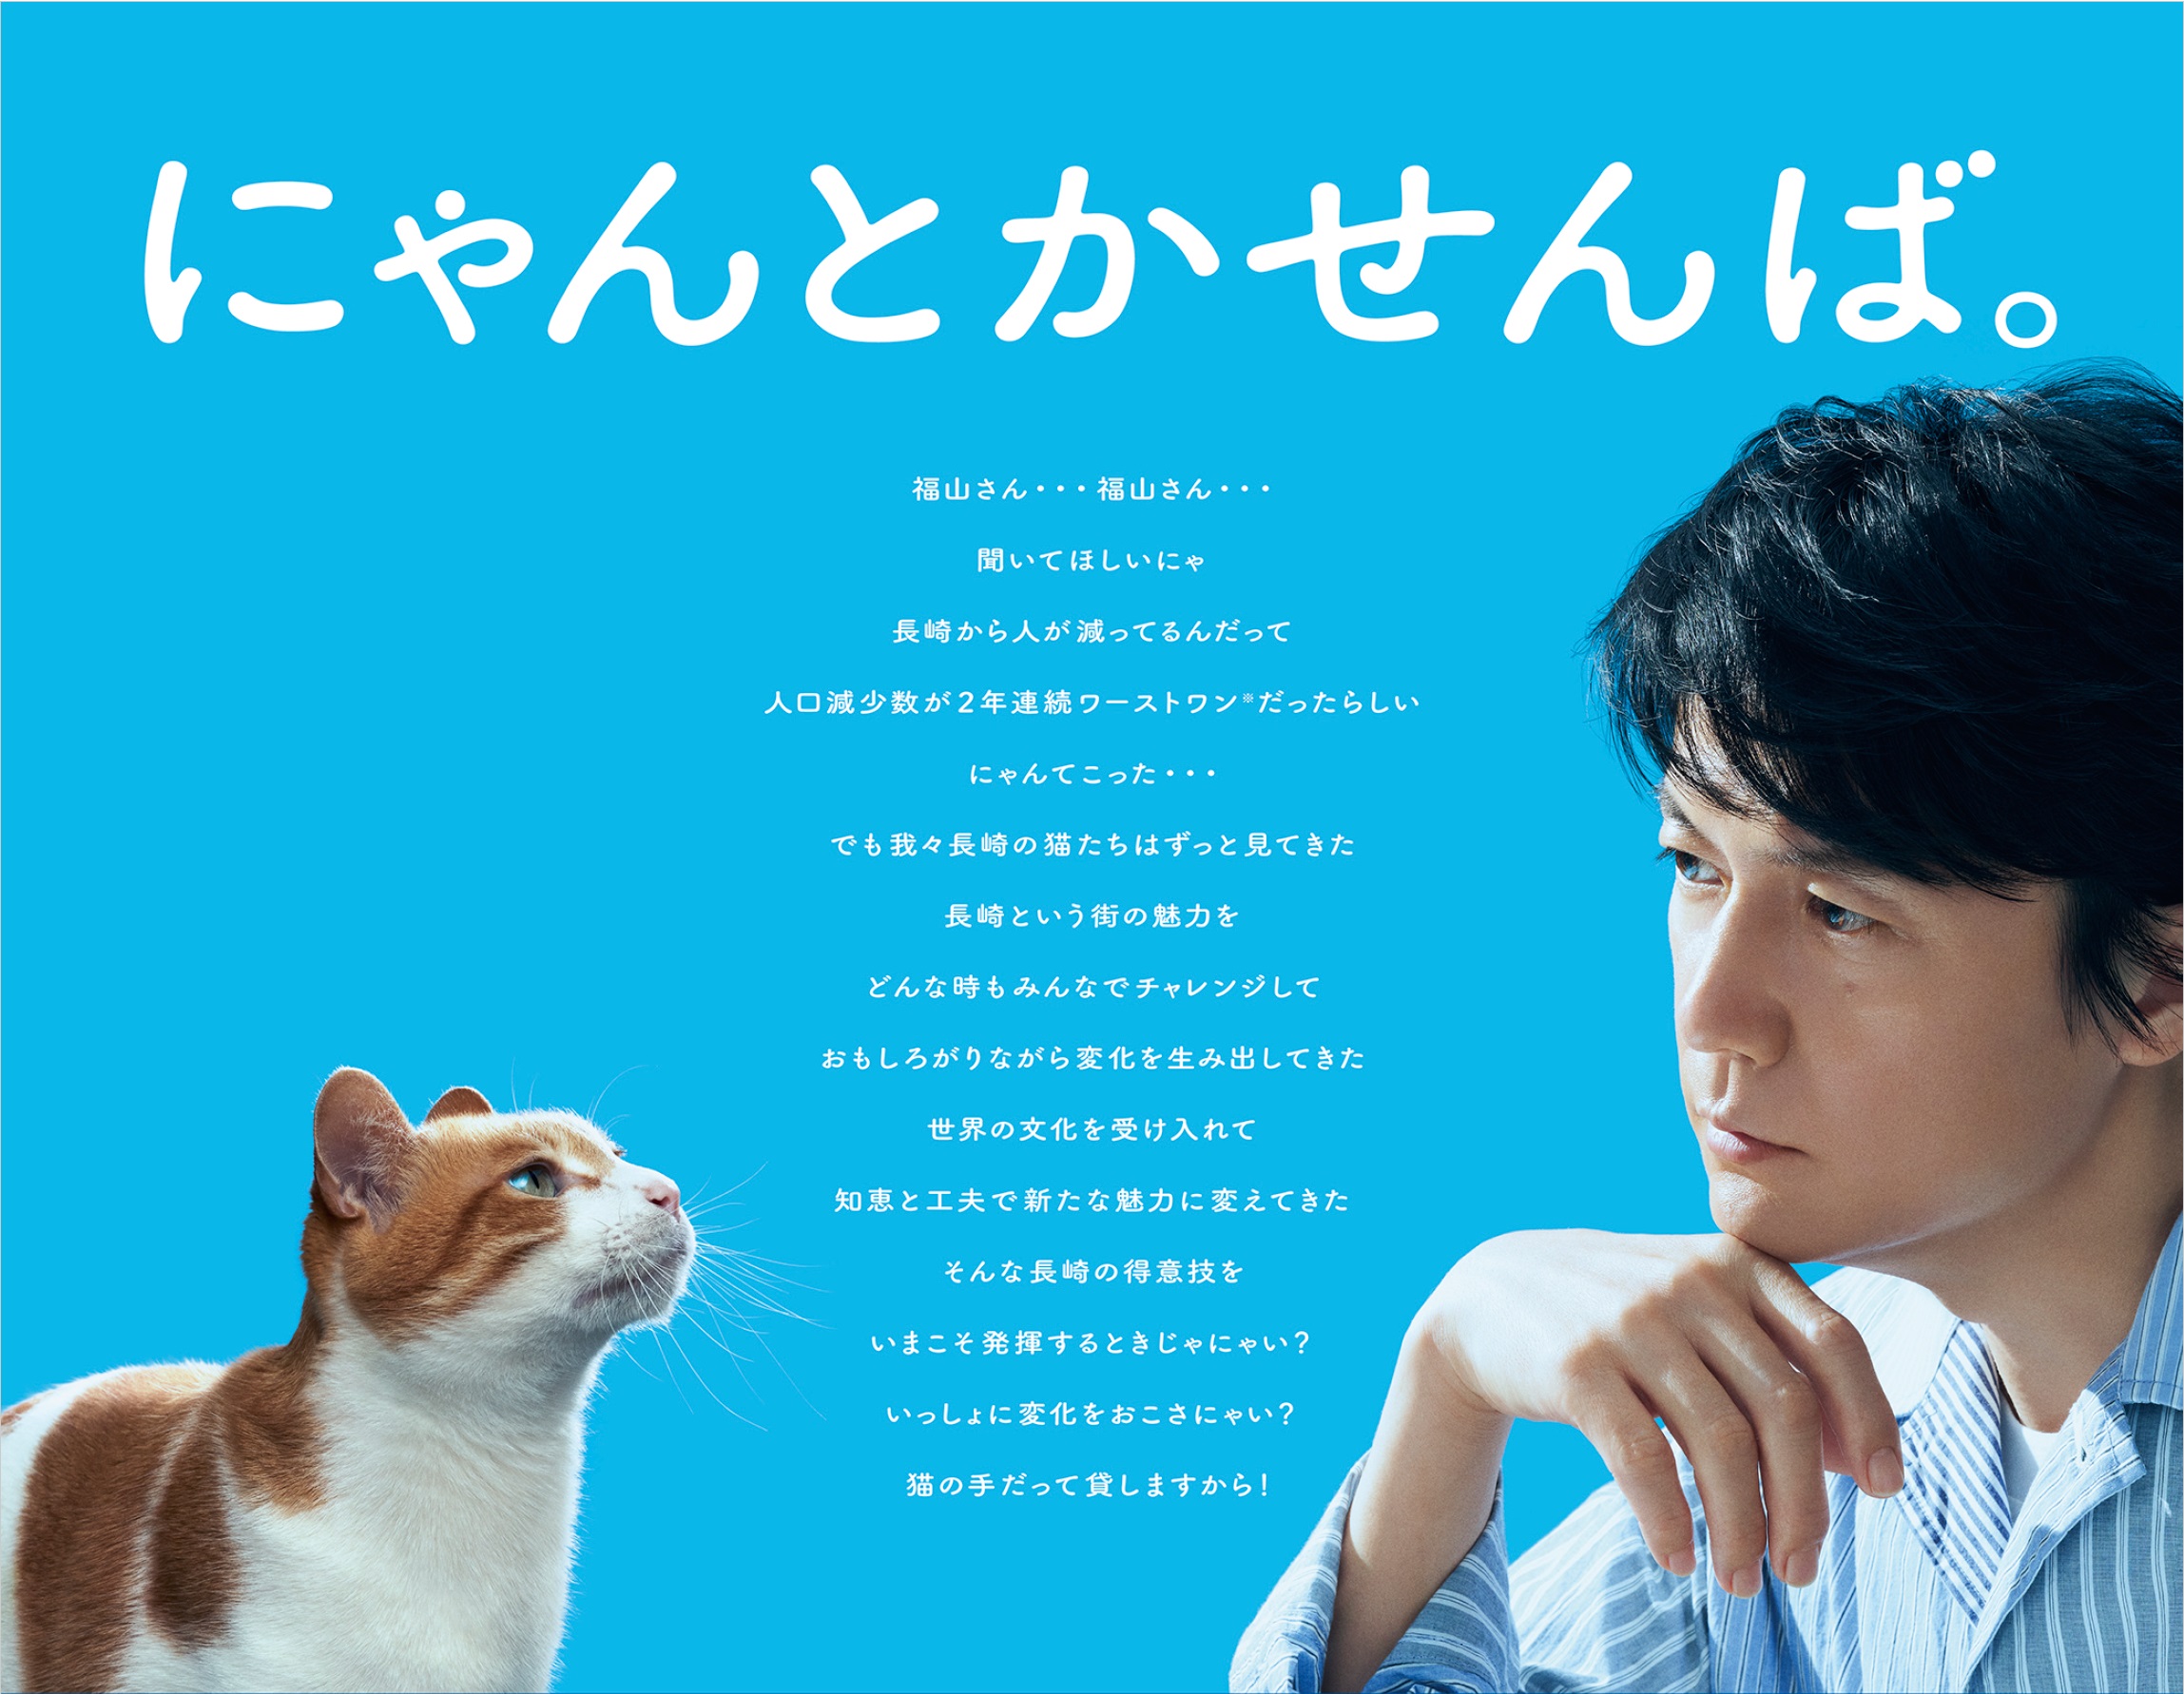 「にゃんとかせんば。」と“猫山雅治”さんらが出演　ウェブ動画で猫になりき り長崎県を応援